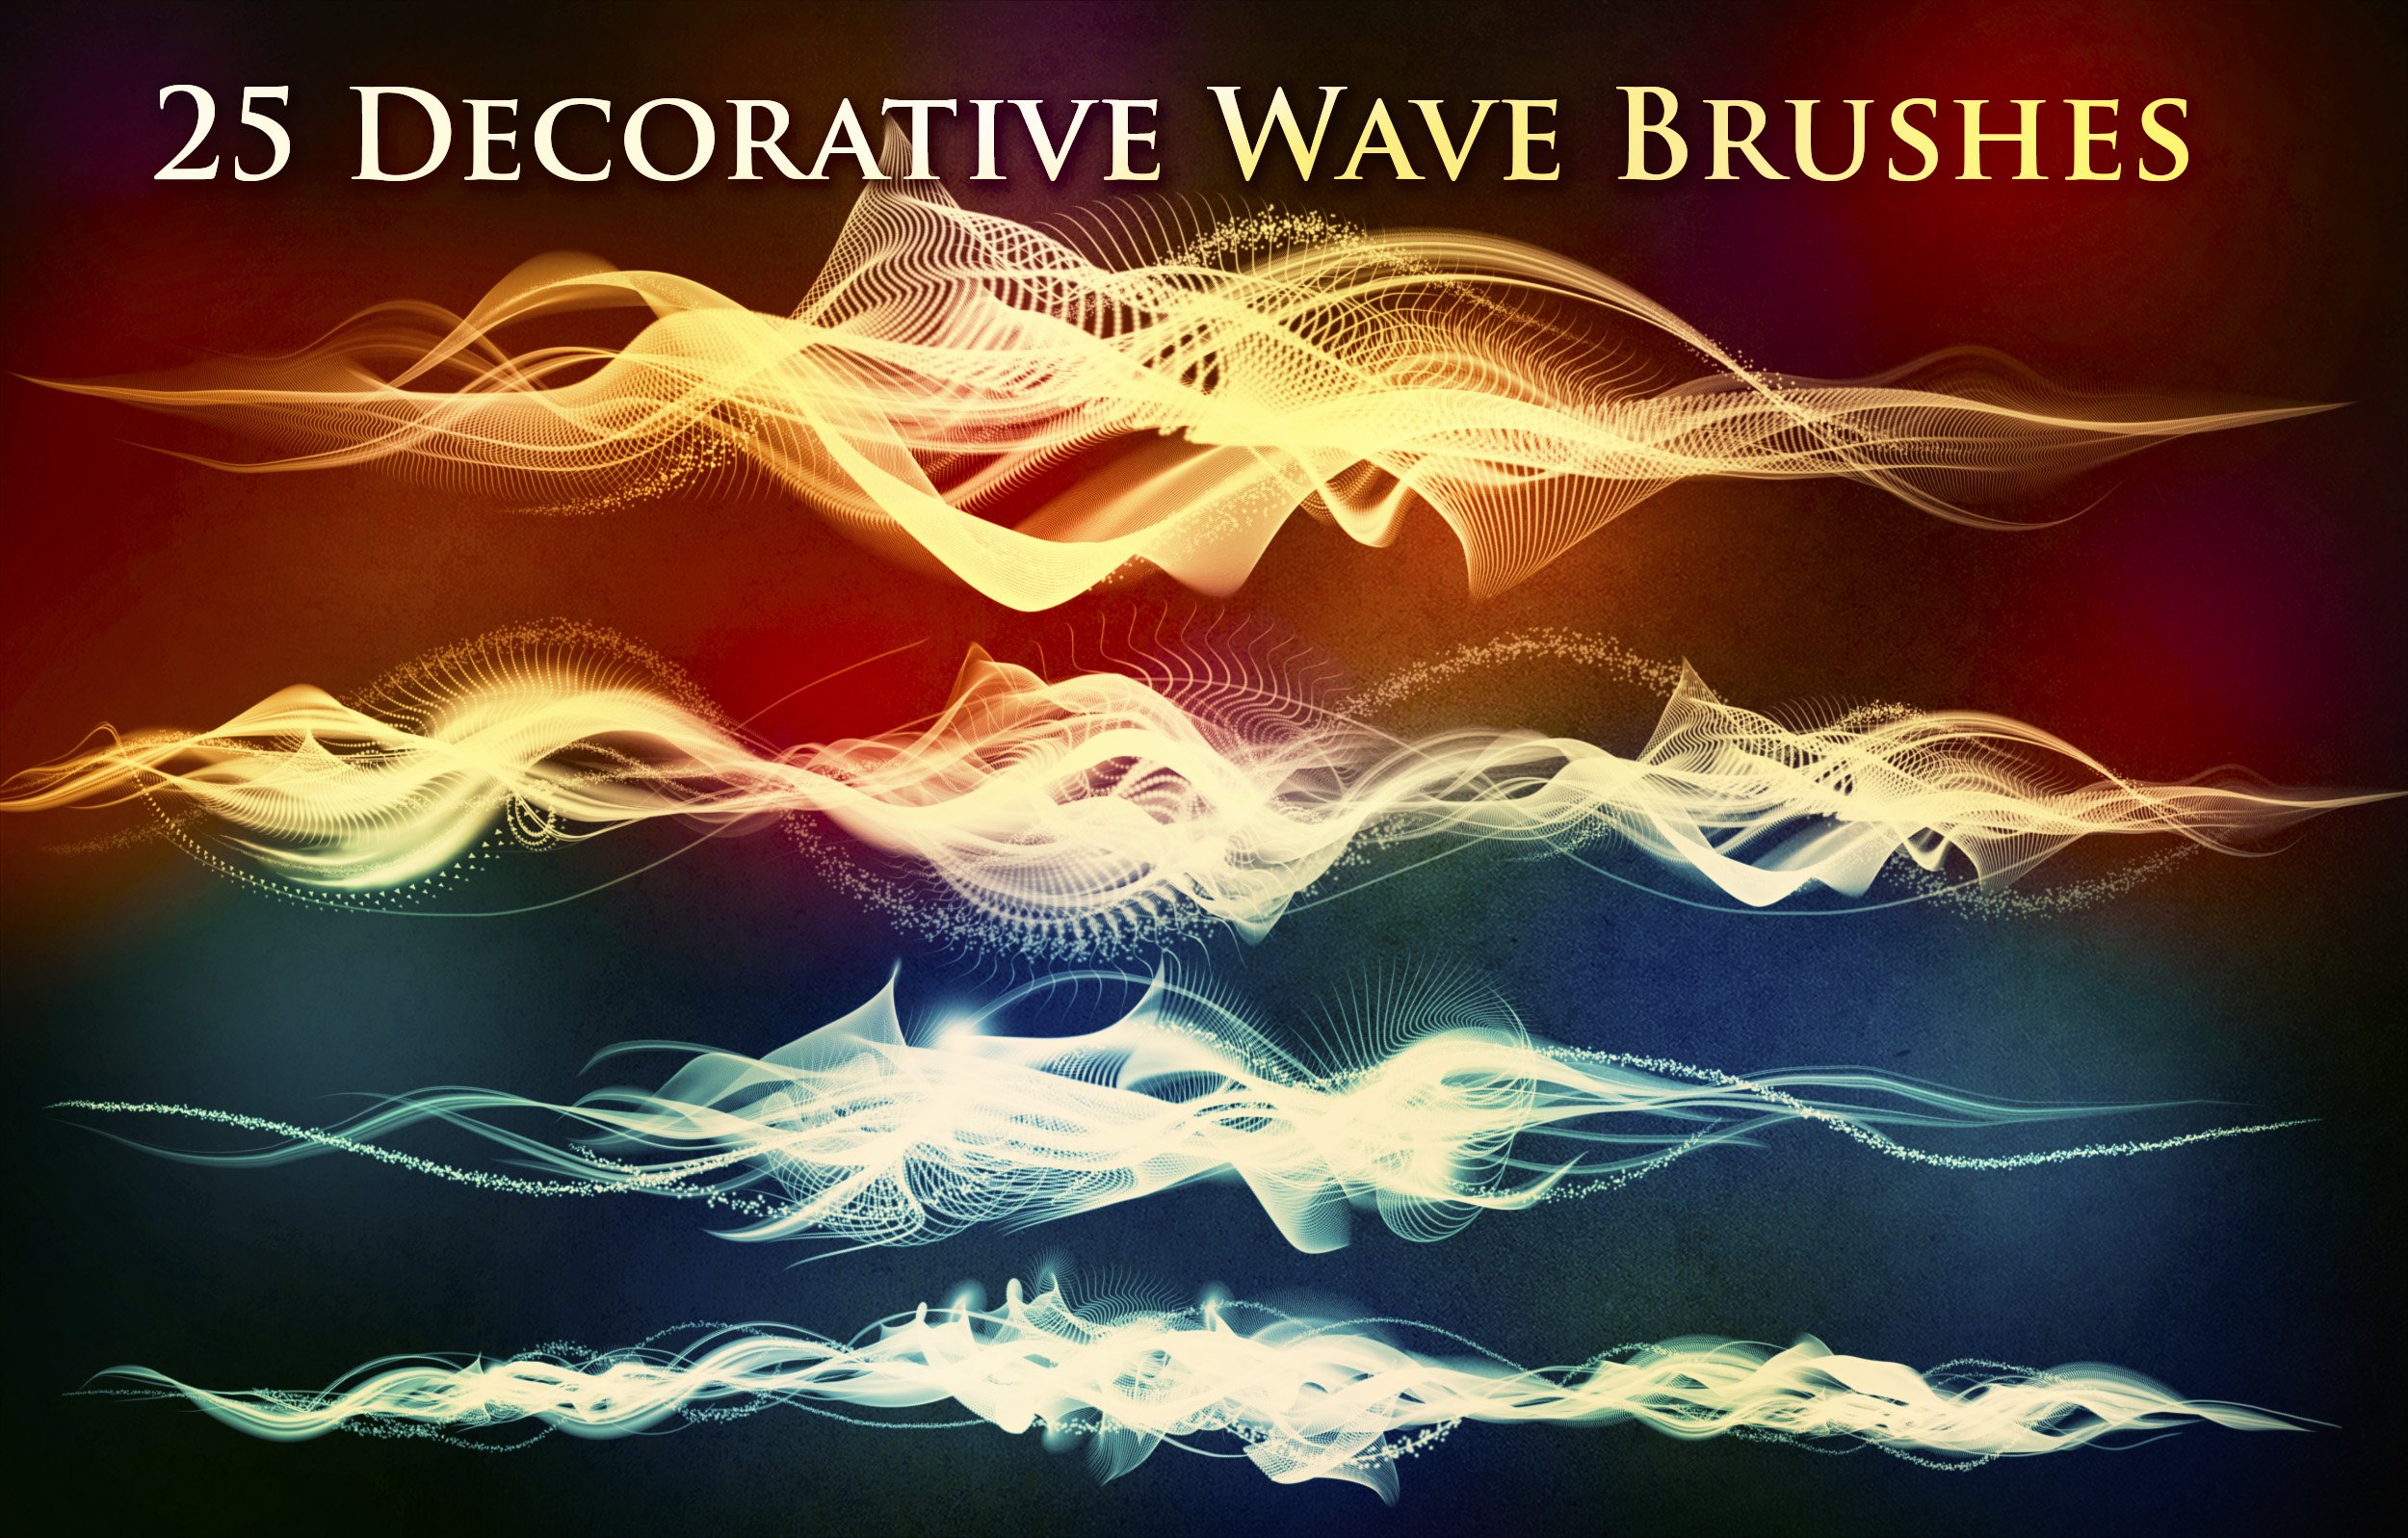 25 Decorative Wave Brushescover image.